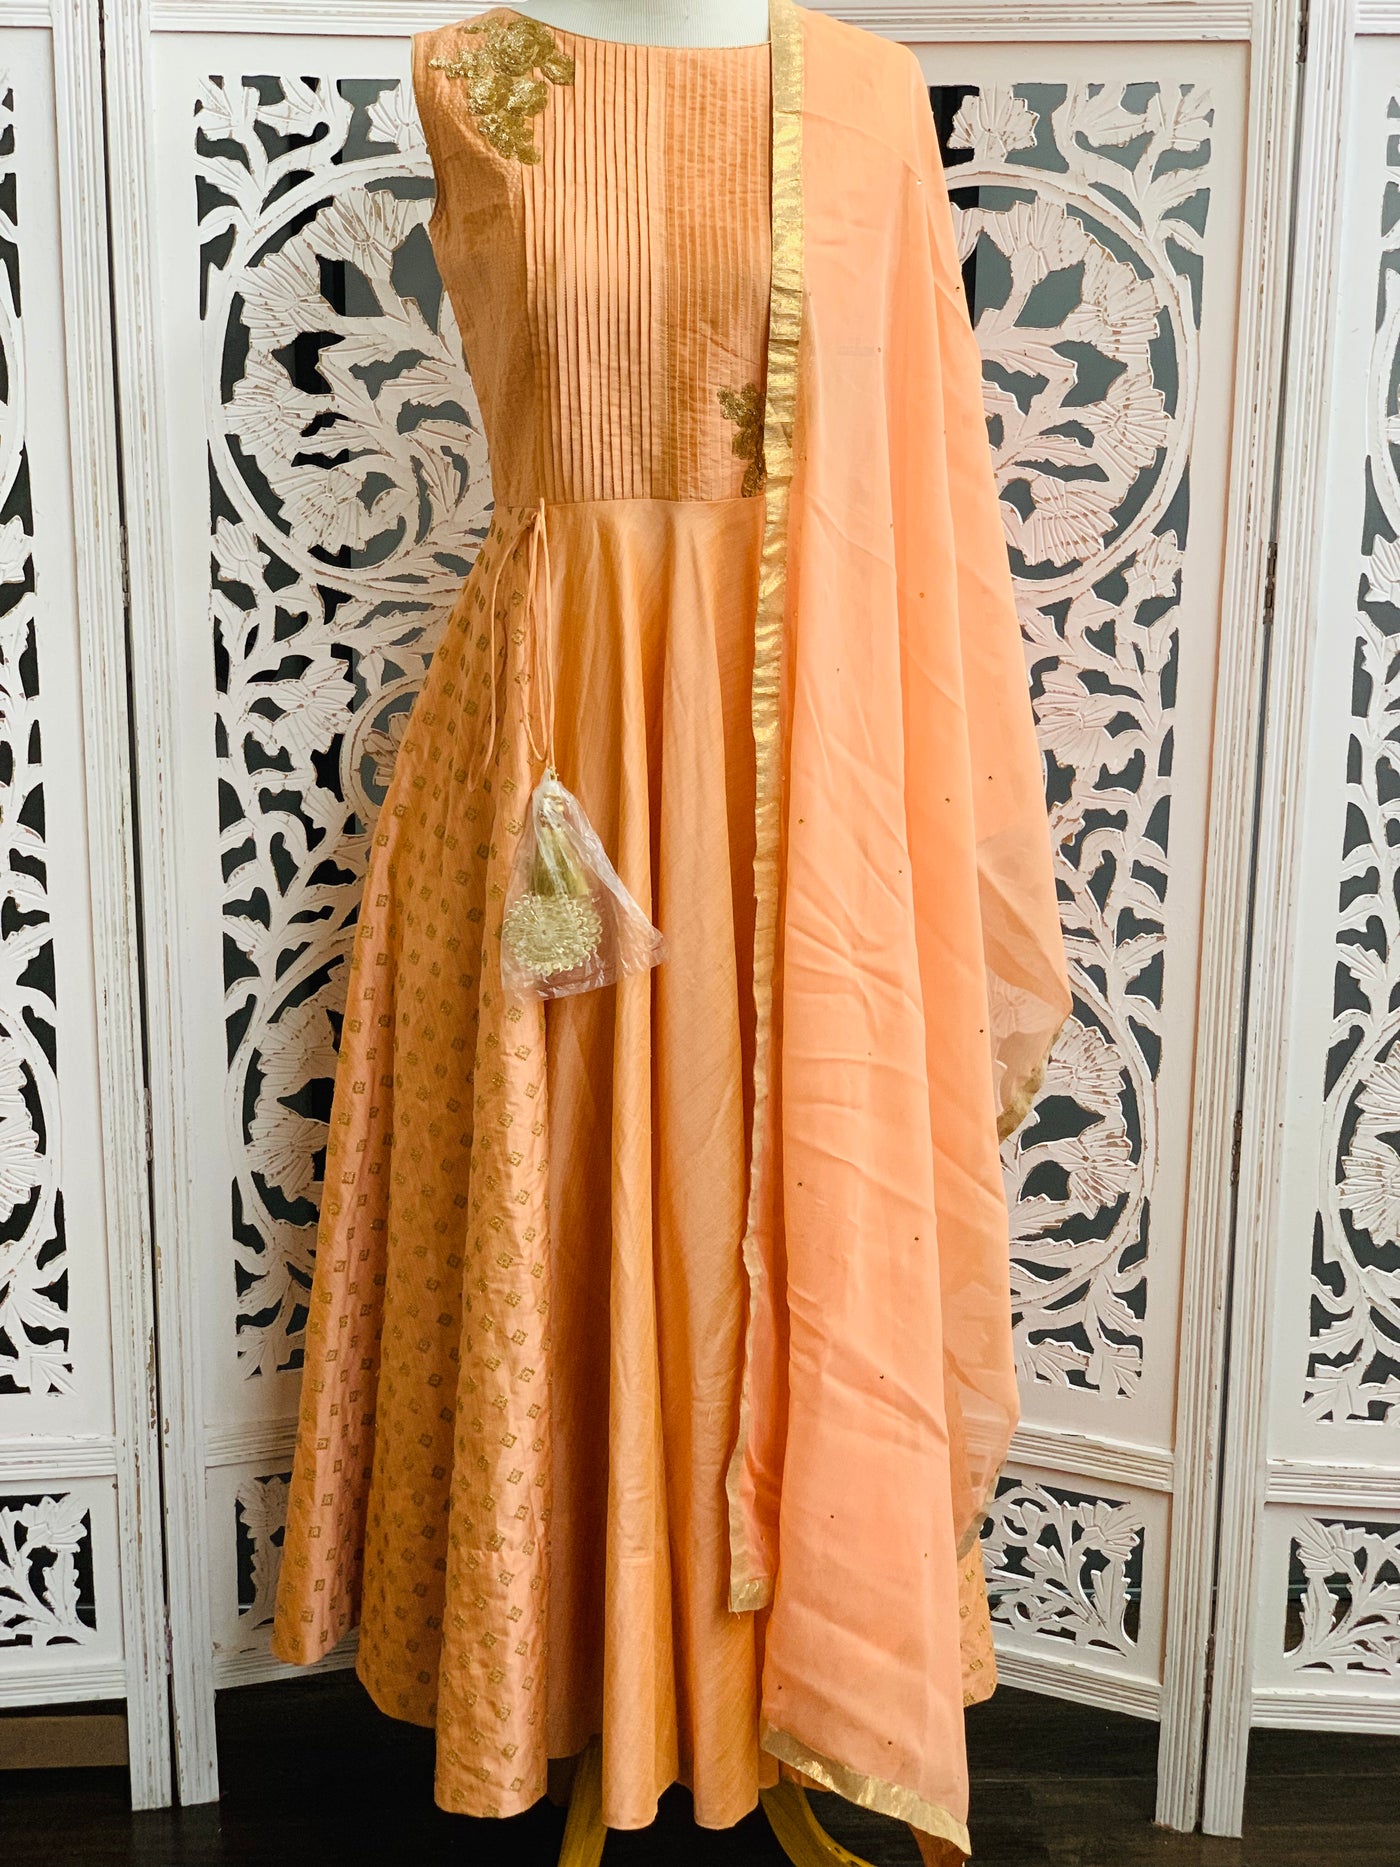 Peach Anarkali Suit - Sakkhi Style